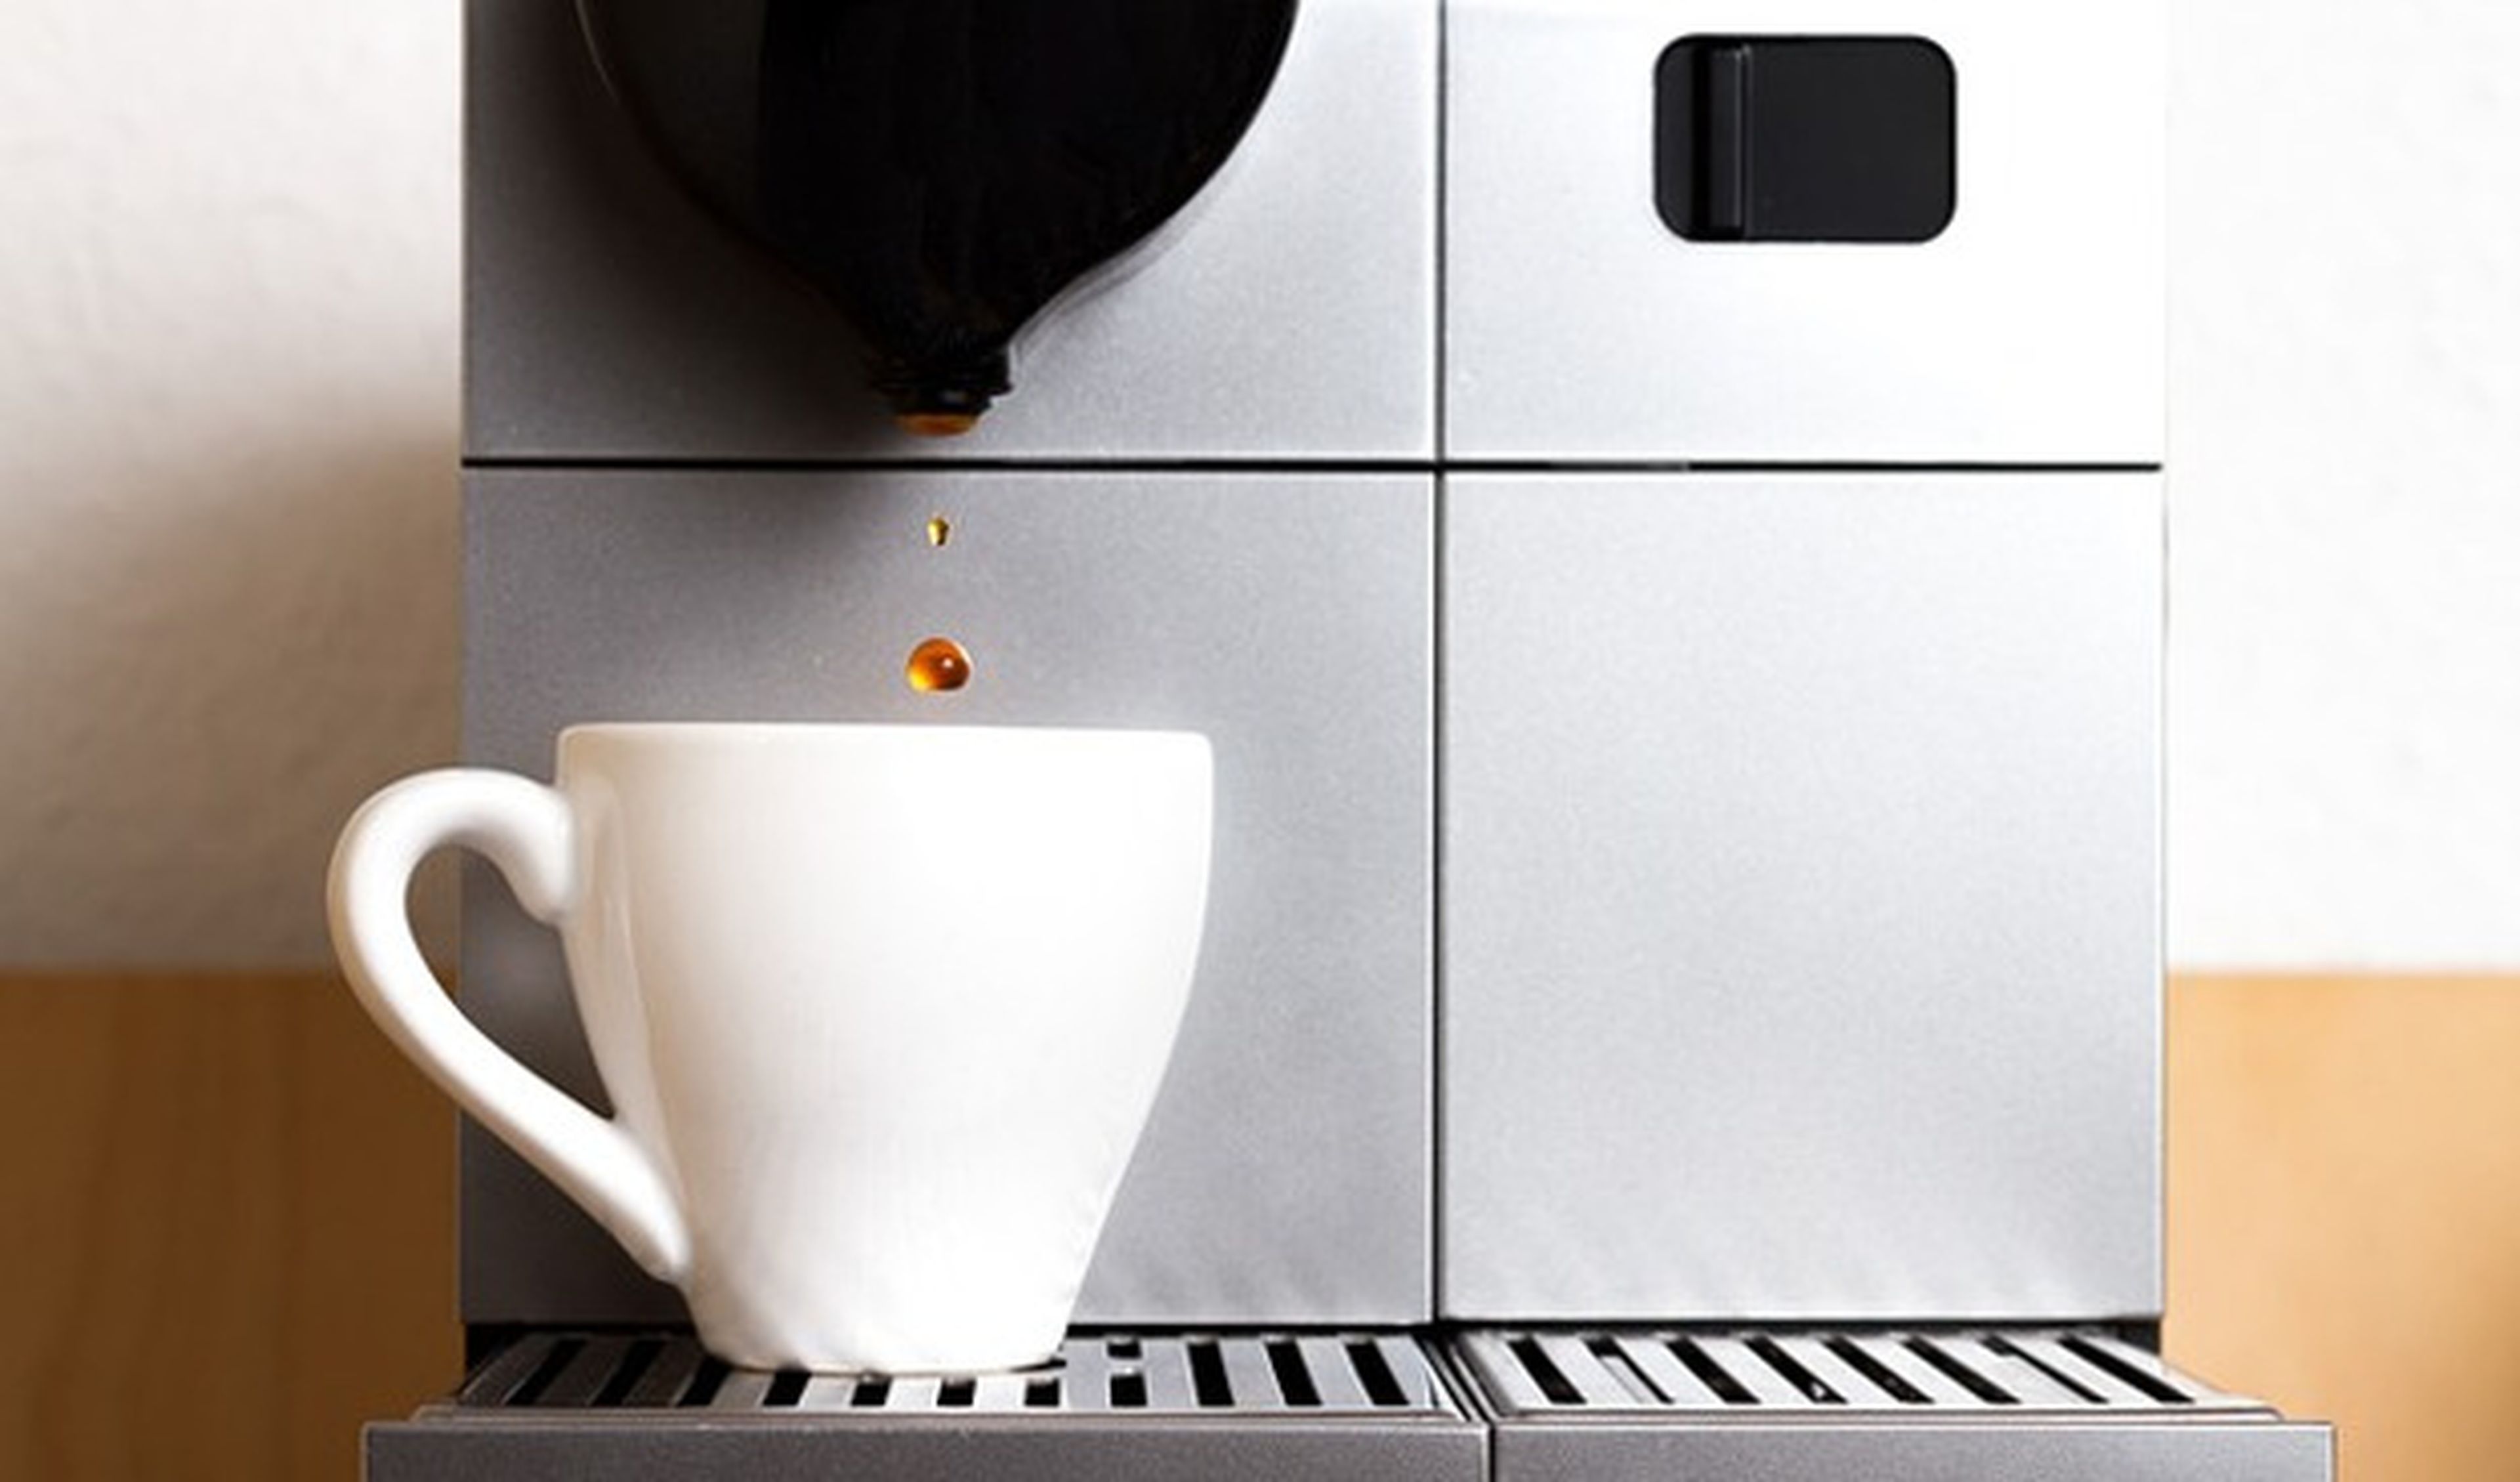 Preparar un buen café en casa empieza por elegir la mejor máquina